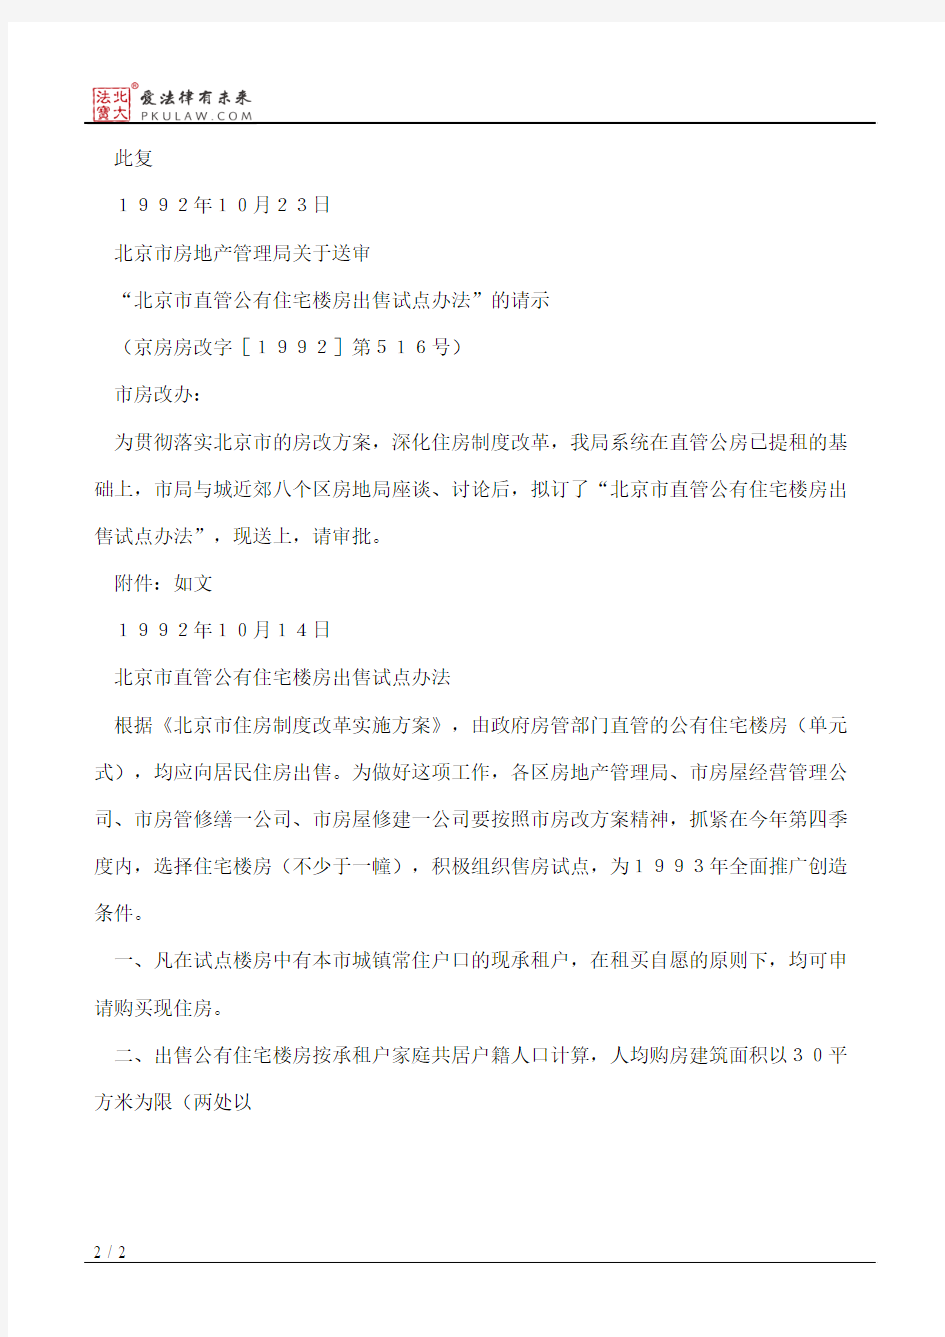 北京市人民政府房改办公室关于“北京市直管公有住宅楼房出售试点